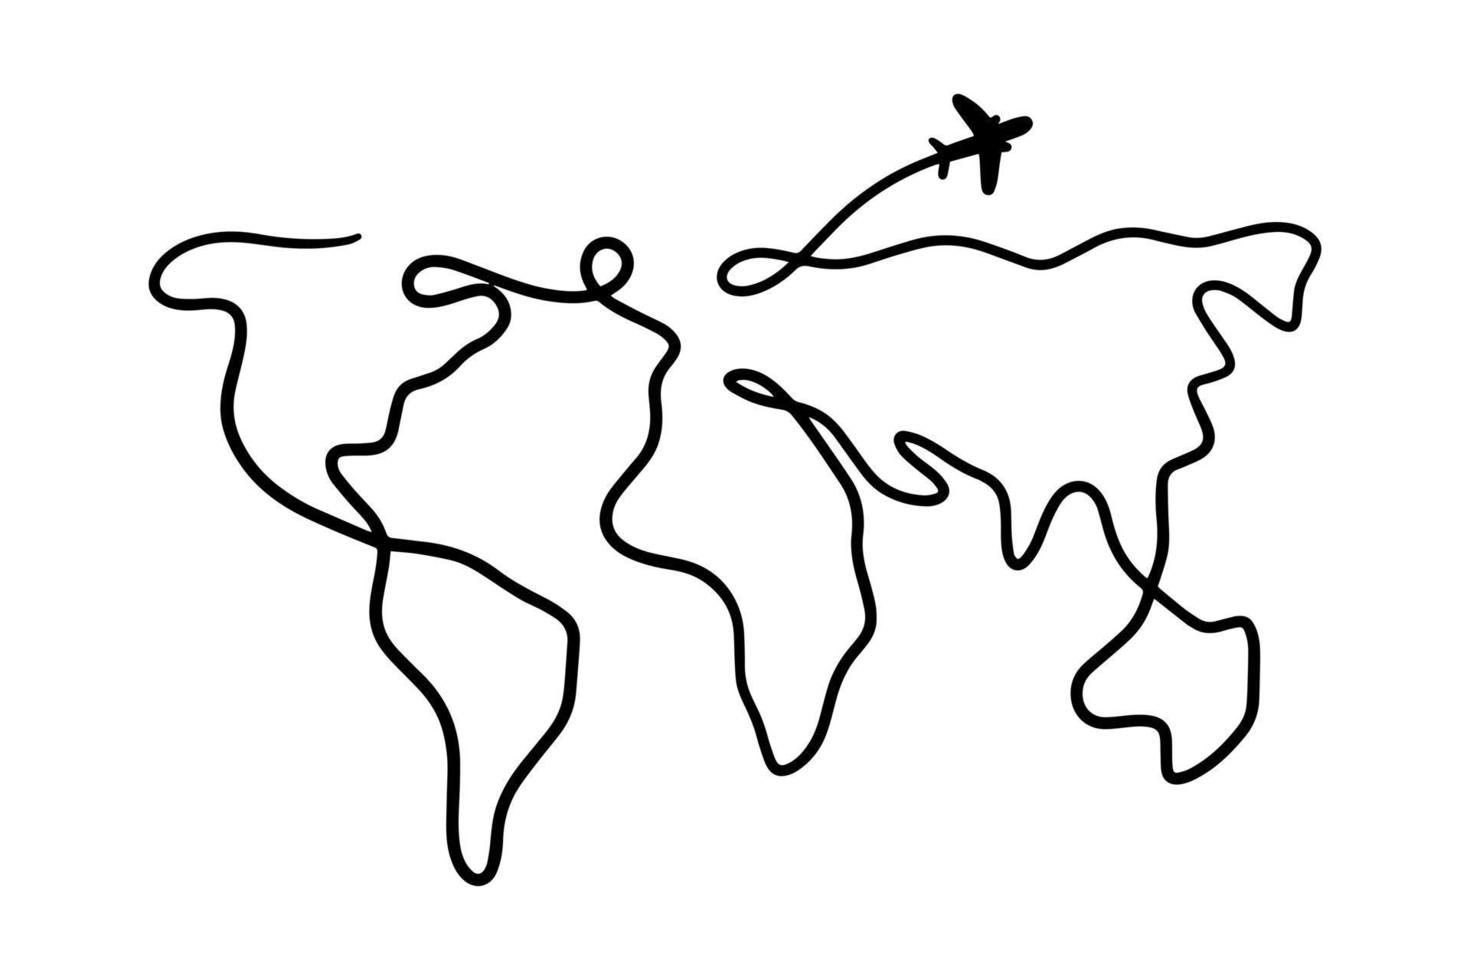 carte du monde doodle. ligne minimale de silhouette continentale mince. illustration vectorielle vecteur